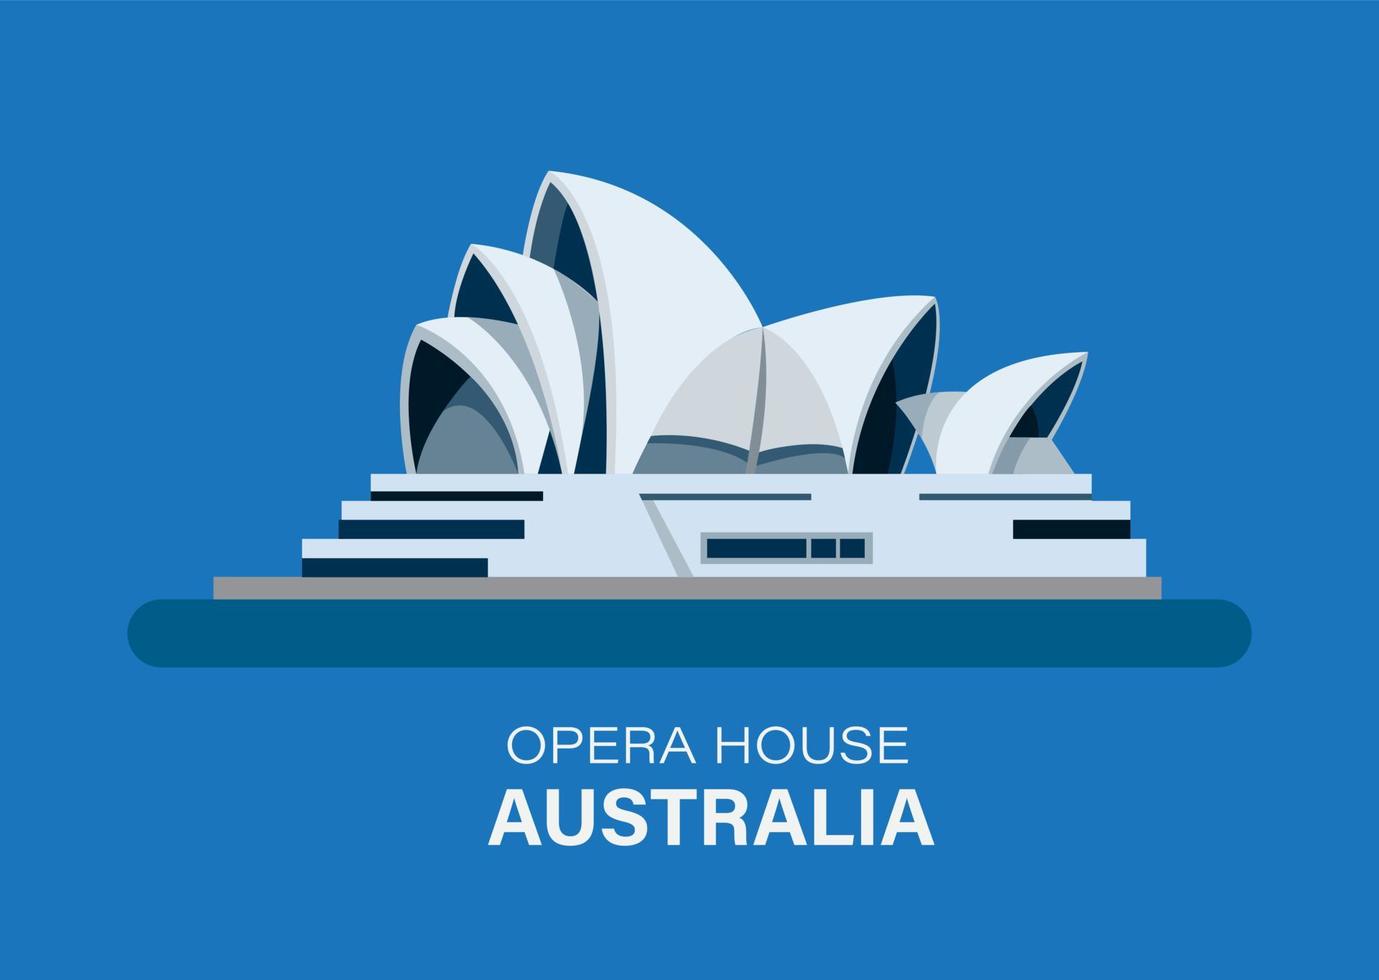 Sydney, Australië 16 januari 2020 Opera House mijlpaal gebouw, redactionele illustratie vlakke stijl vector geïsoleerd op blauwe achtergrond